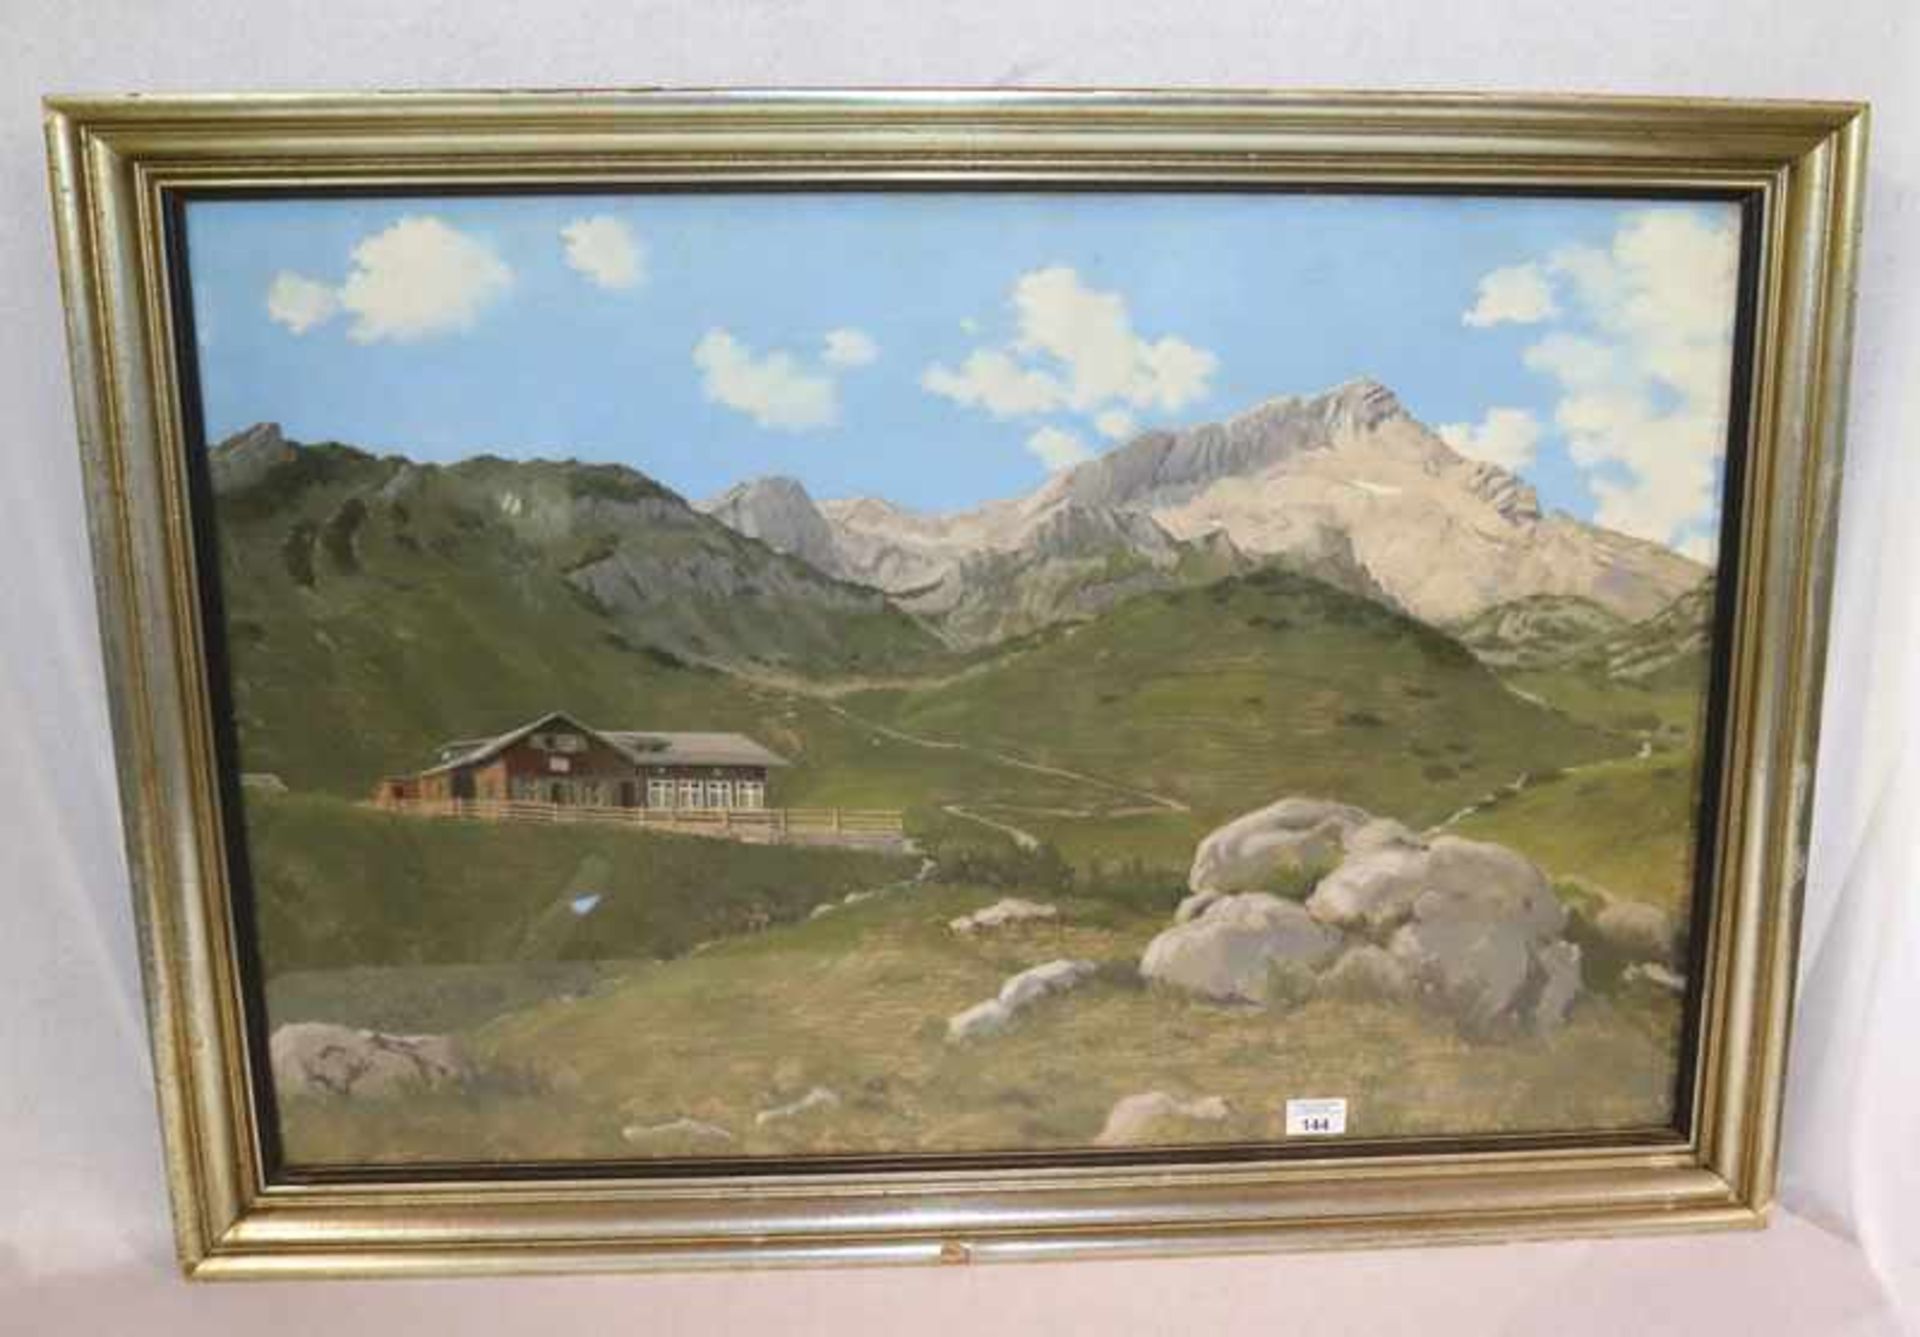 Gemälde, Mischtechnik 'Hochalm vor Alpspitze', signiert H. (Heinrich) Buchert, datiert 1938, unter